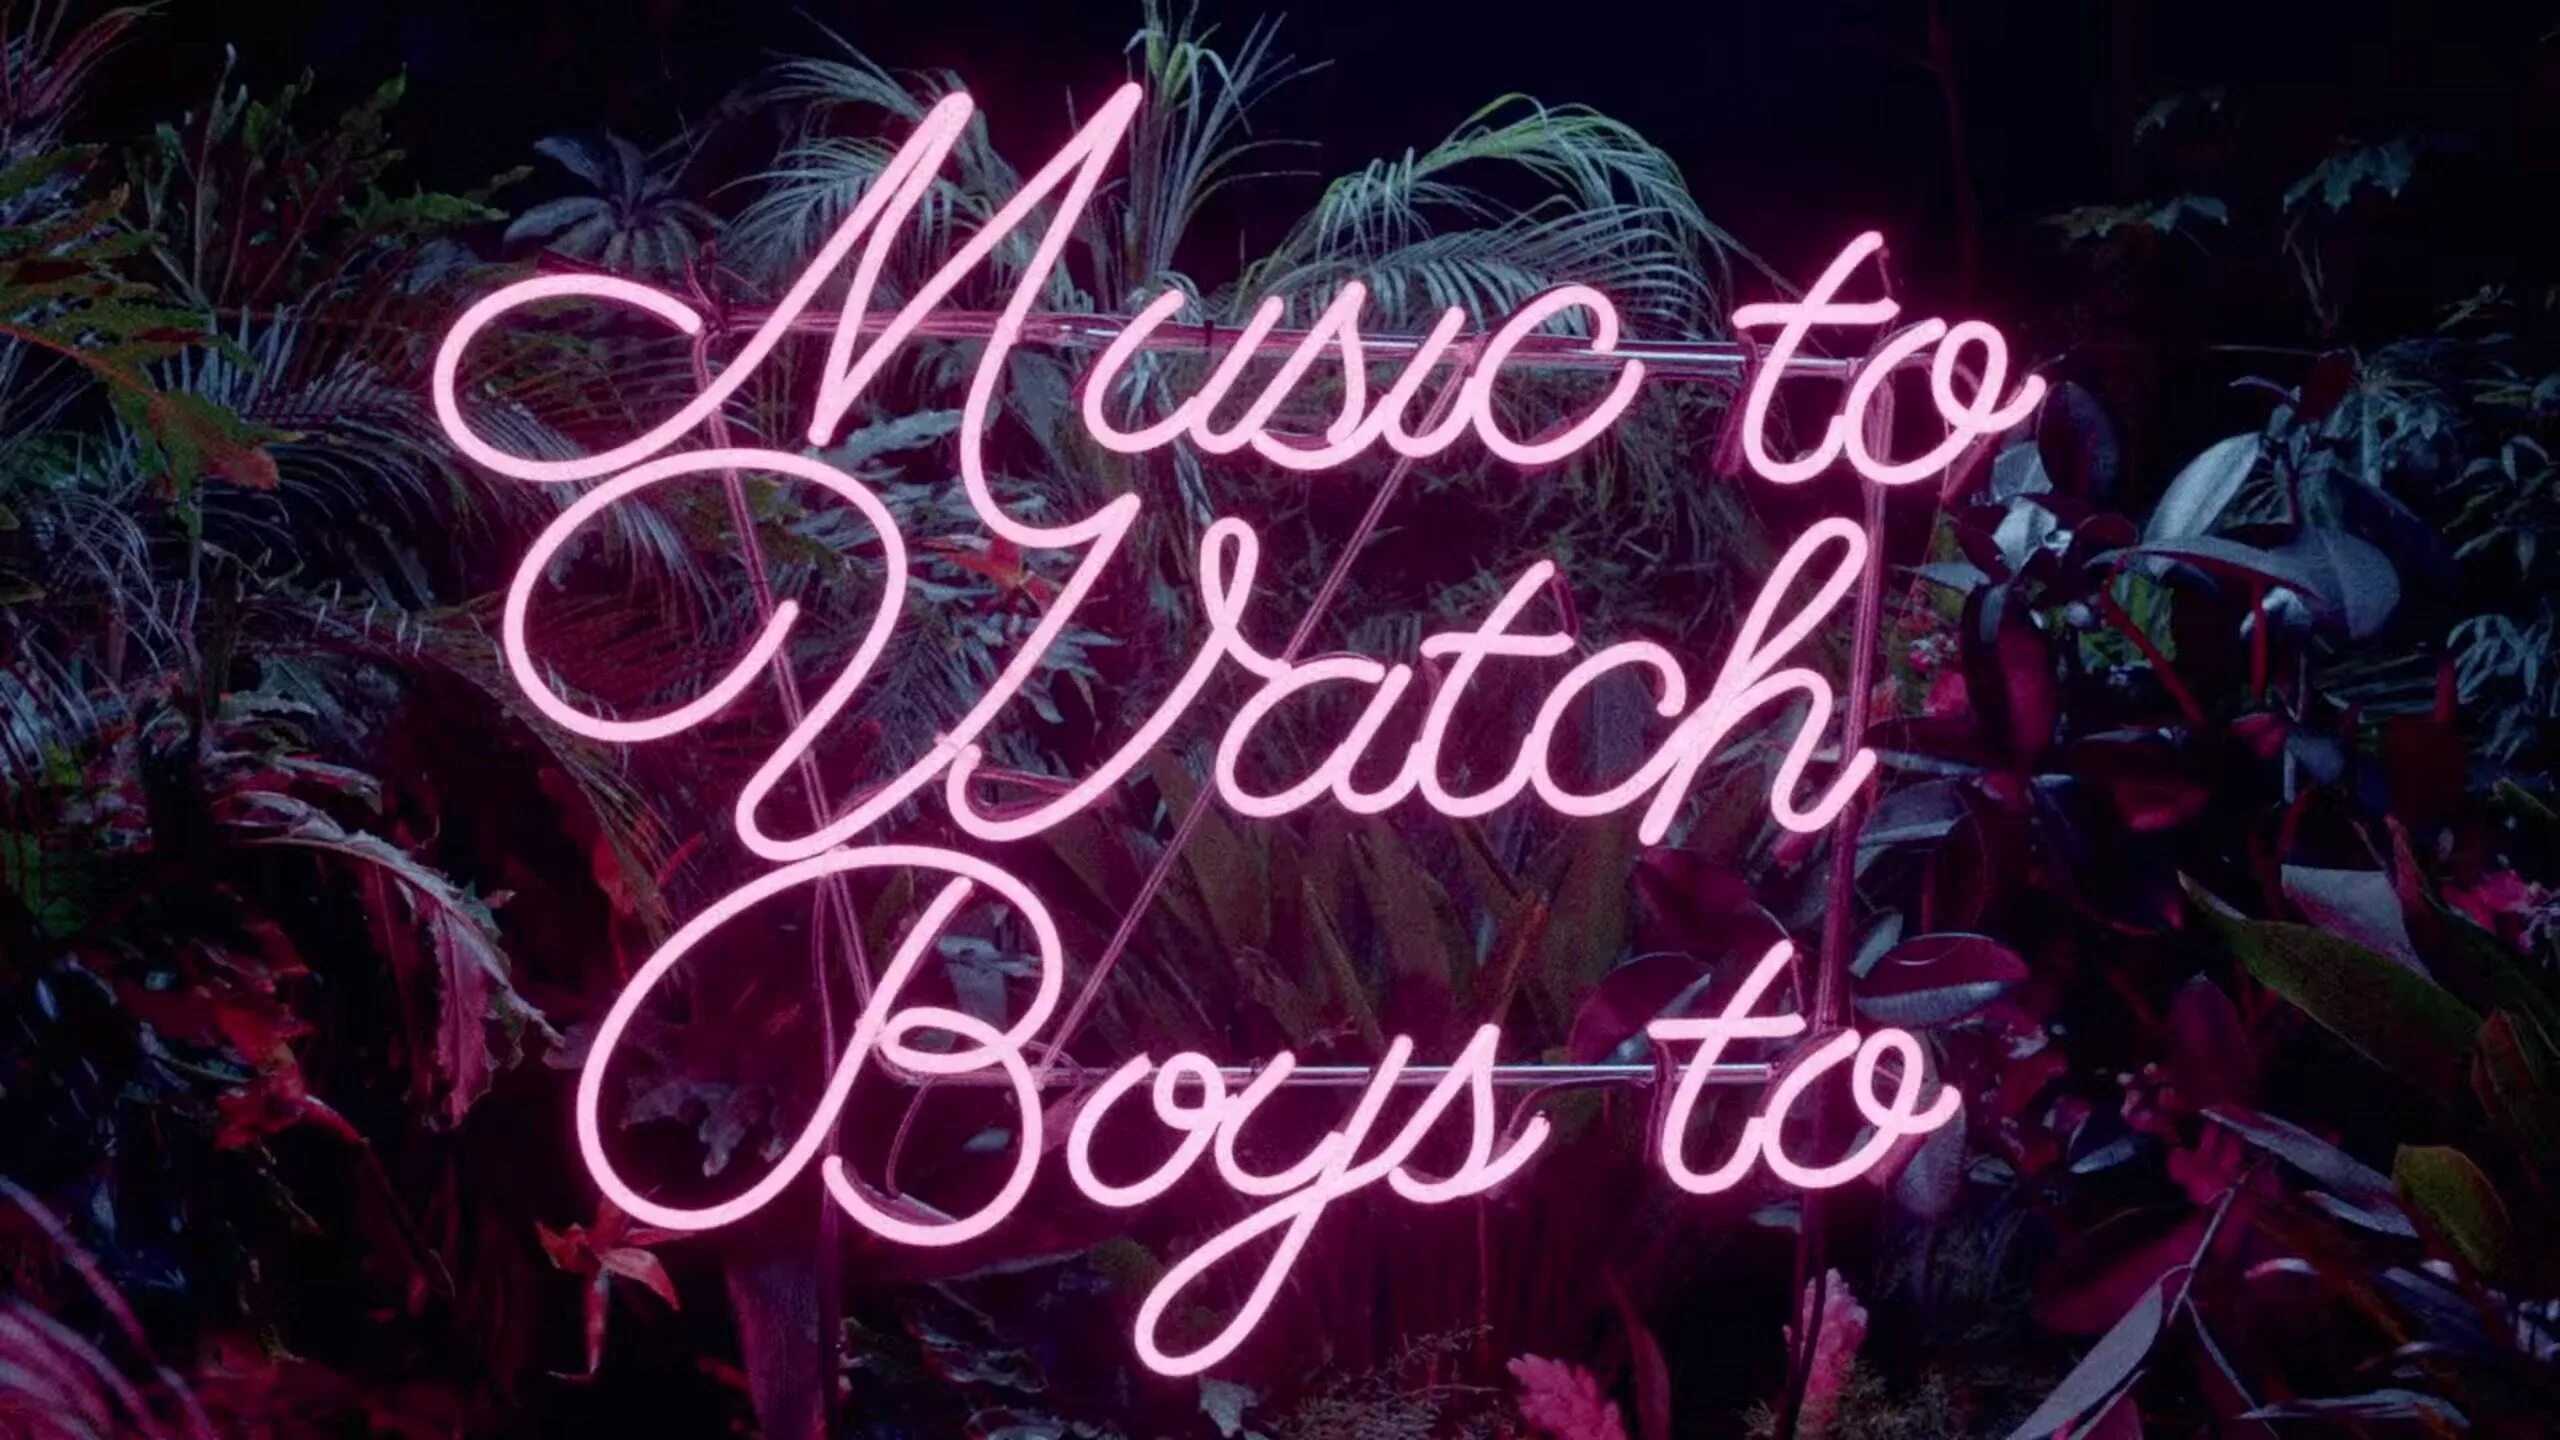 Music to watch boys to. Неон надпись. Неоновые надписи на рабочий стол. Lana del Rey watch boys.